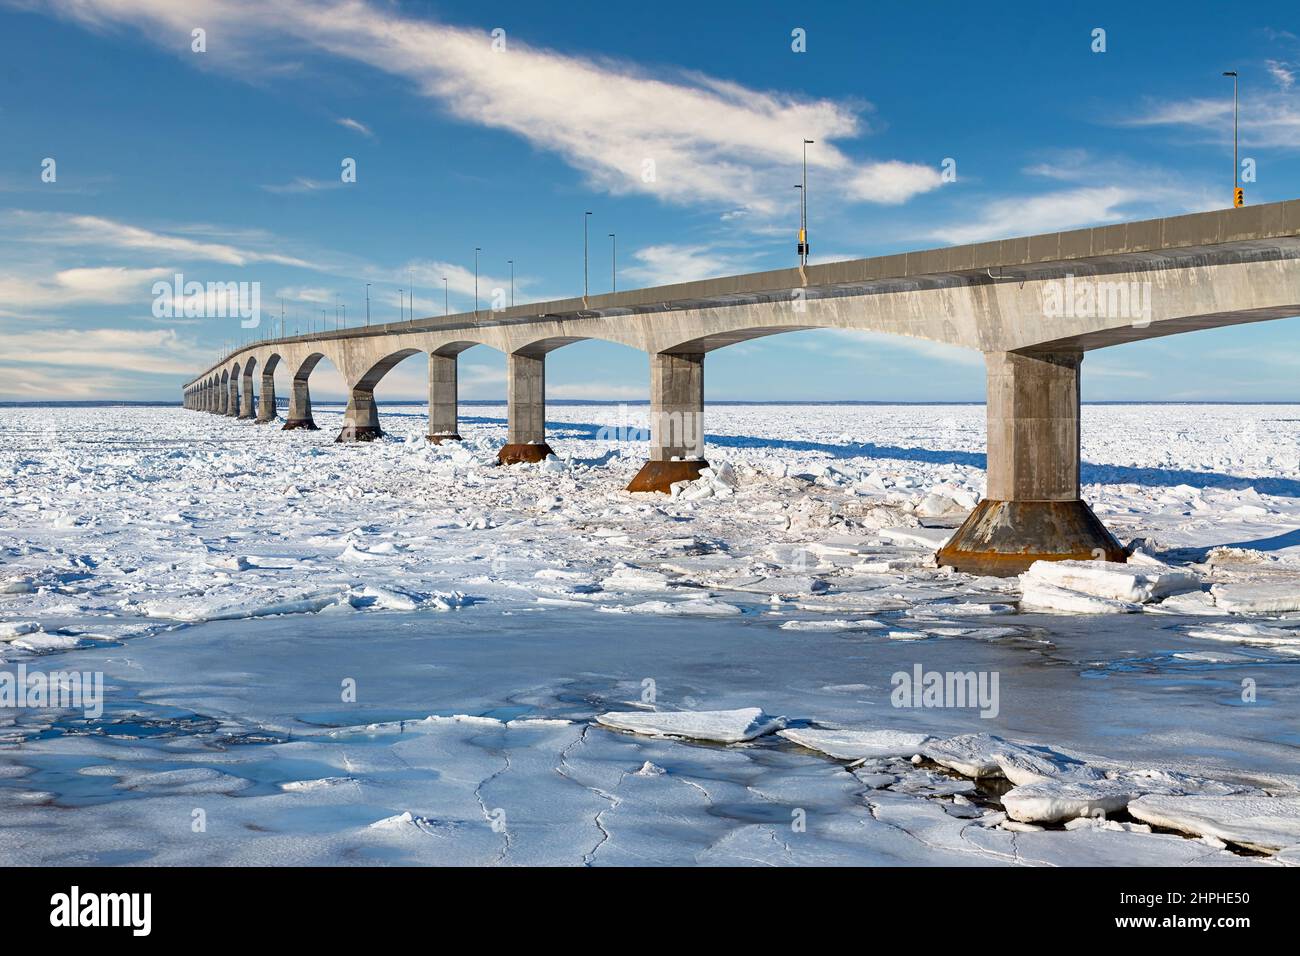 El puente de la Confederación en invierno que une la isla del Príncipe Eduardo y la parte continental de New Brunswick, Canadá. Visto desde el Borden, isla del Príncipe Eduardo. Foto de stock